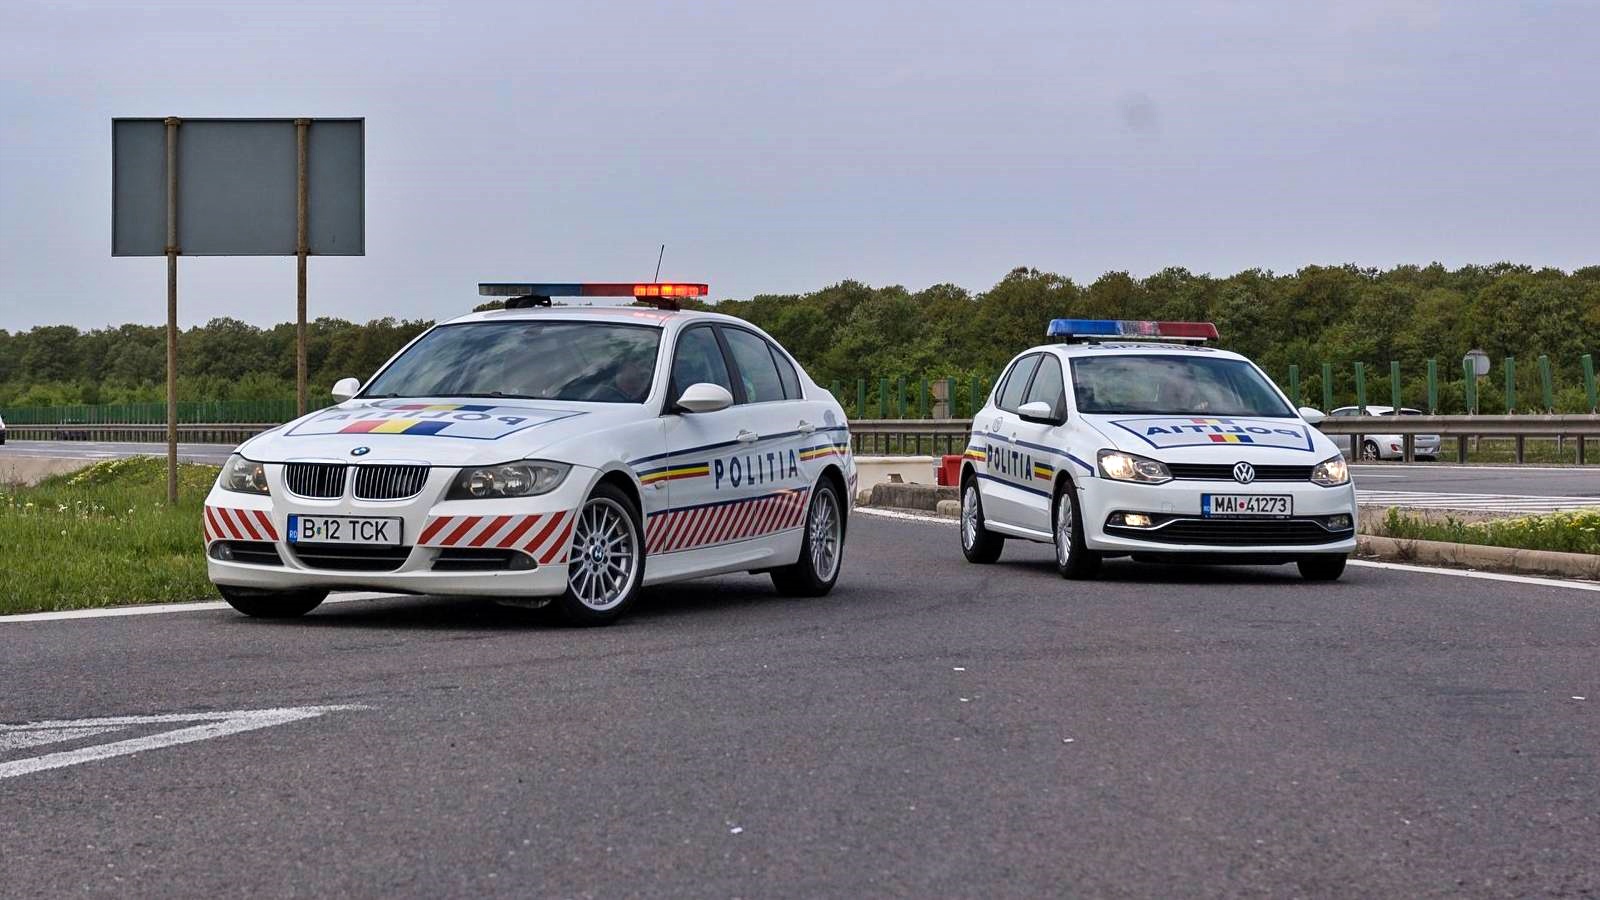 Nueva advertencia de la policía rumana sobre el tráfico por carretera